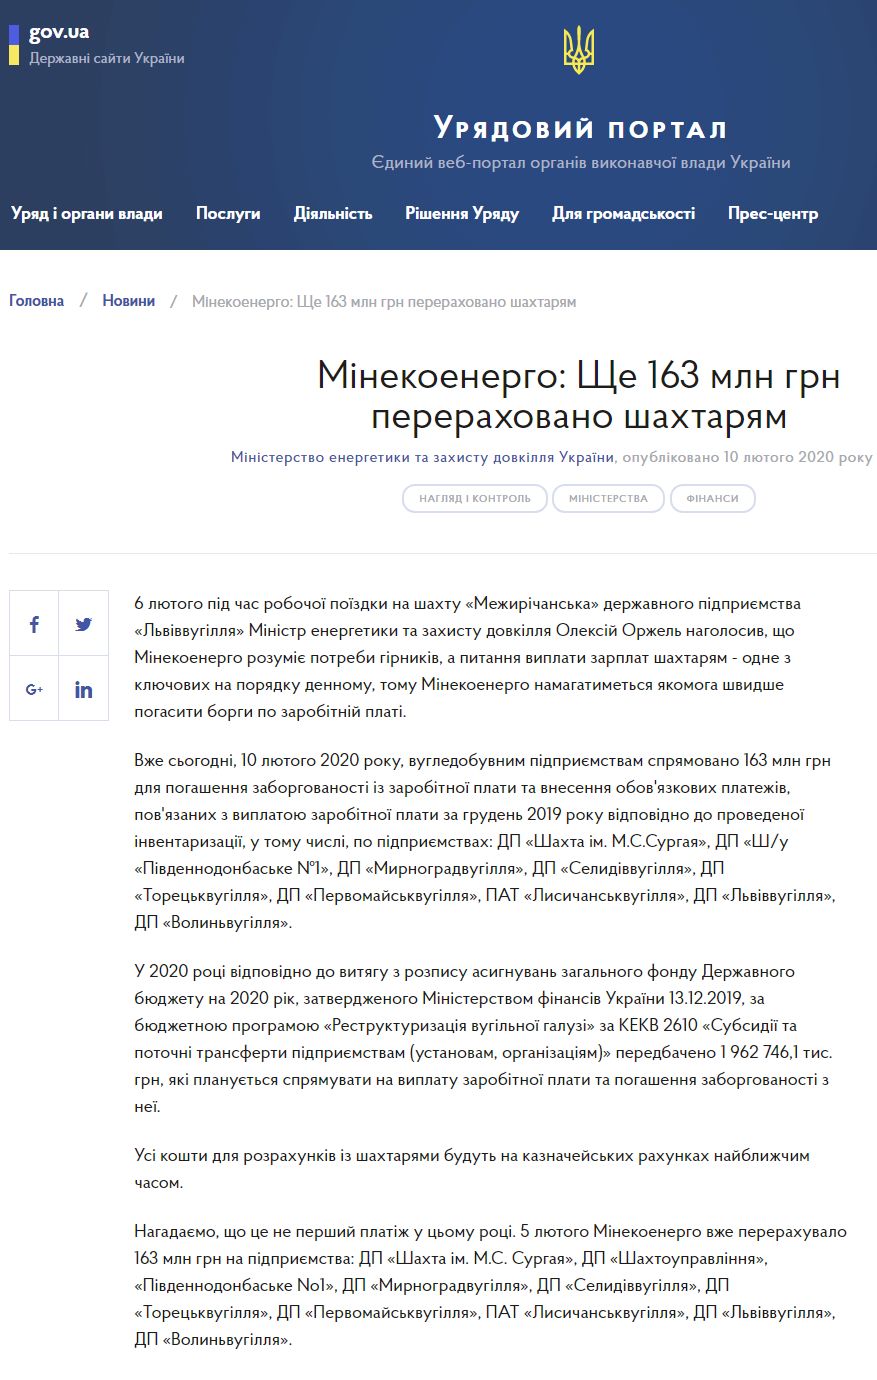 https://www.kmu.gov.ua/news/minekoenergo-shche-163-mln-grn-pererahovano-shahtaryam